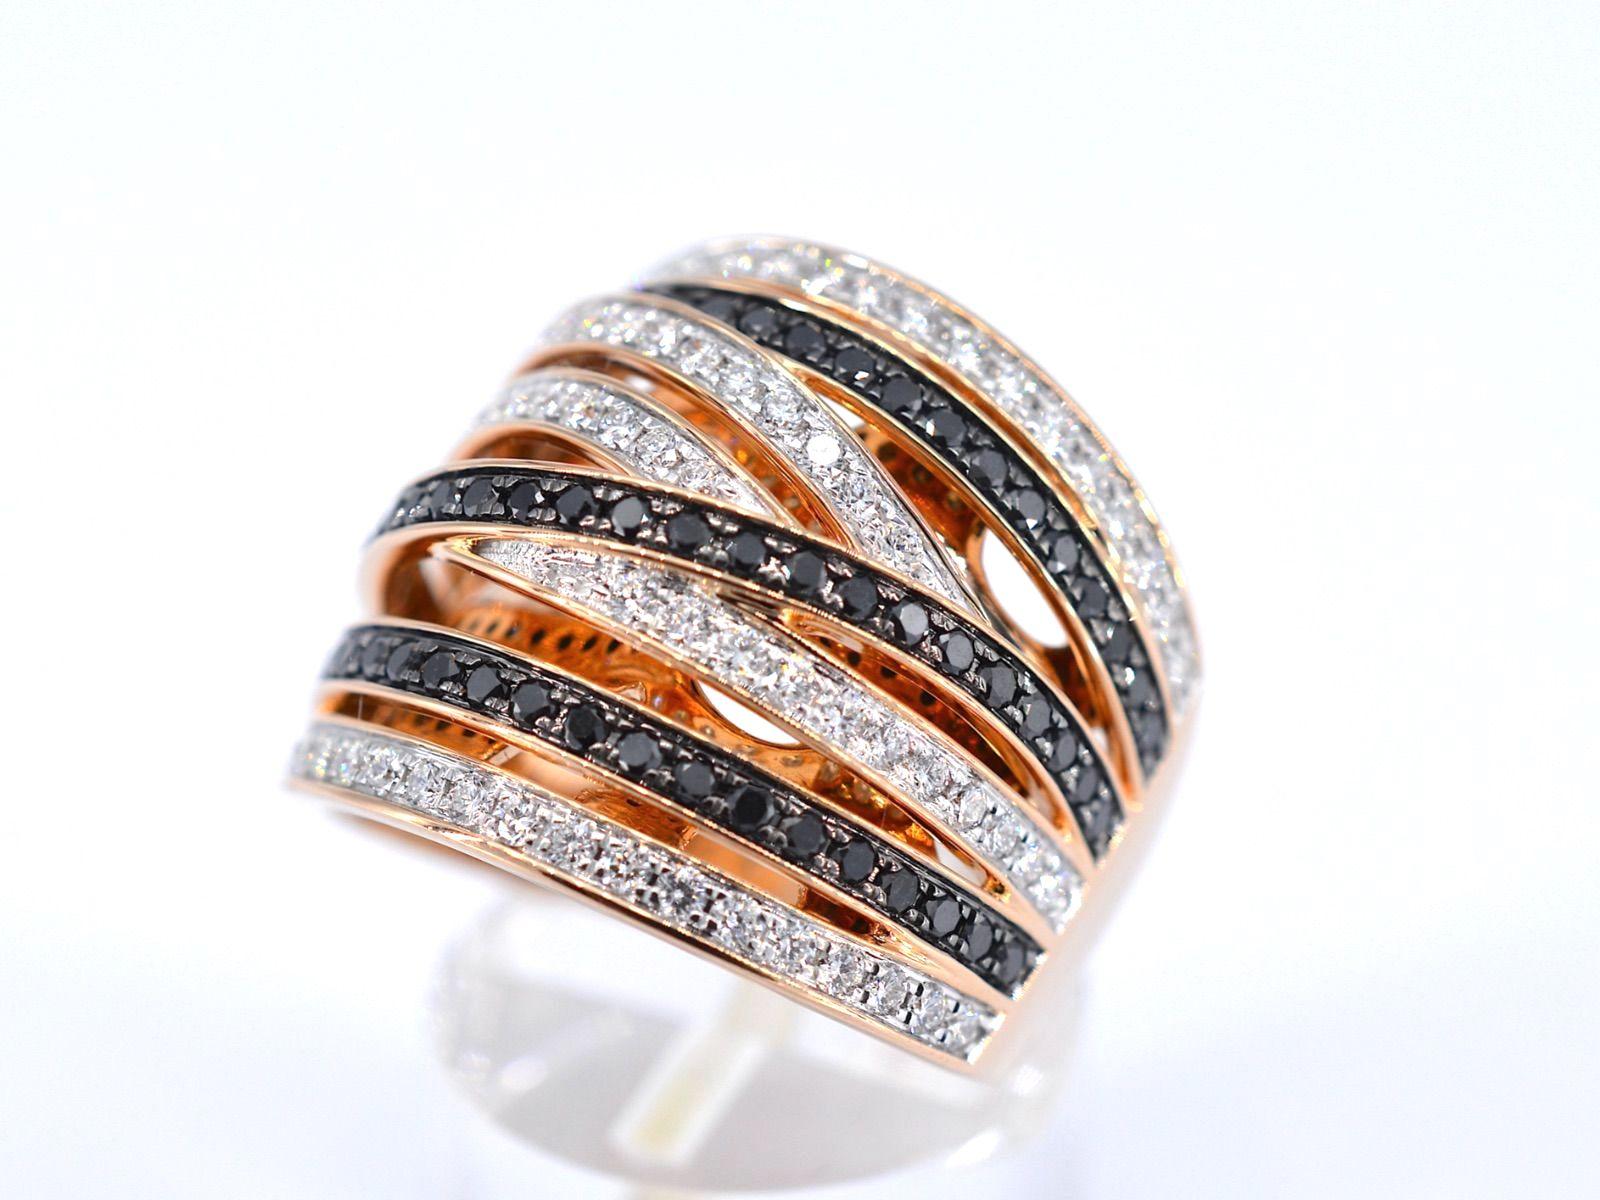 Diamanten: Natürlich glänzend
Gewicht: 1,50 Karat
Form: Brillant-Schliff
Farbe: hochweiß (F-G) und schwarz (verstärkt)
Klarheit: US
Qualität: Sehr gut

Jewell: Ring
Gewicht: 11 Gramm
Punze: 18 Karat 
Ringgröße: 54 (17,25 mm)
Zustand: